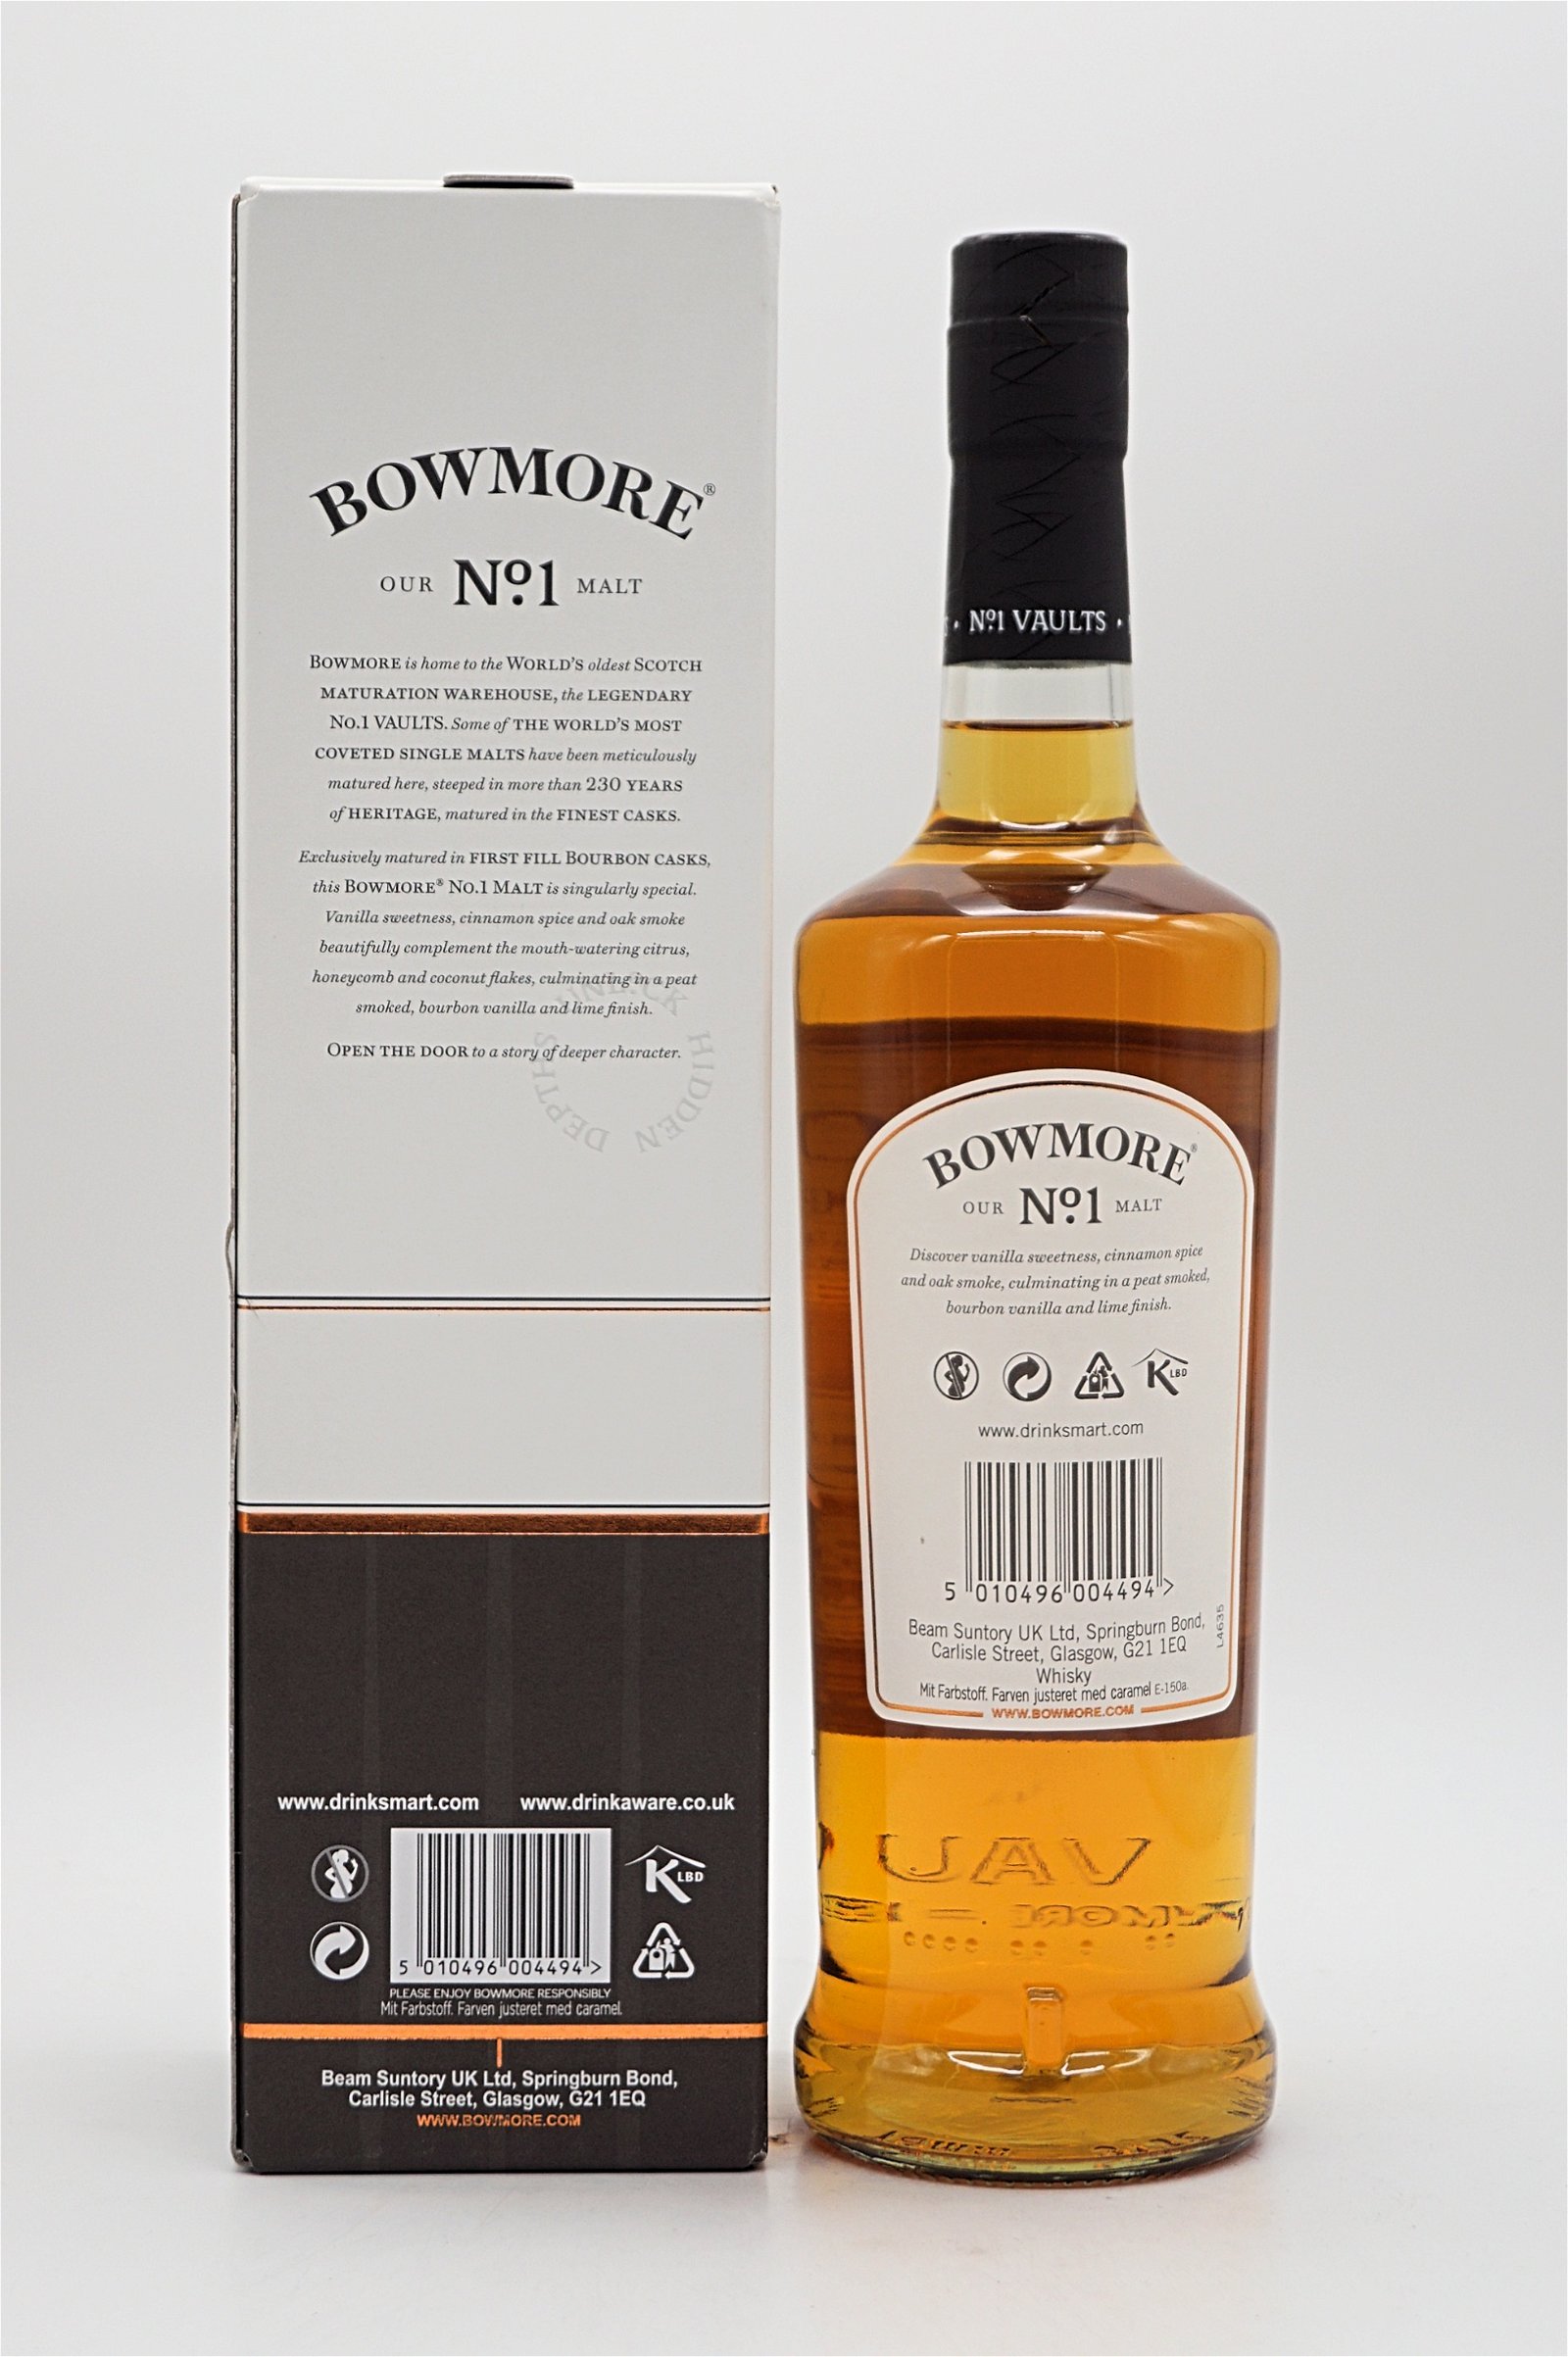 Bowmore No 1 Islay Single Malt Scotch Whisky